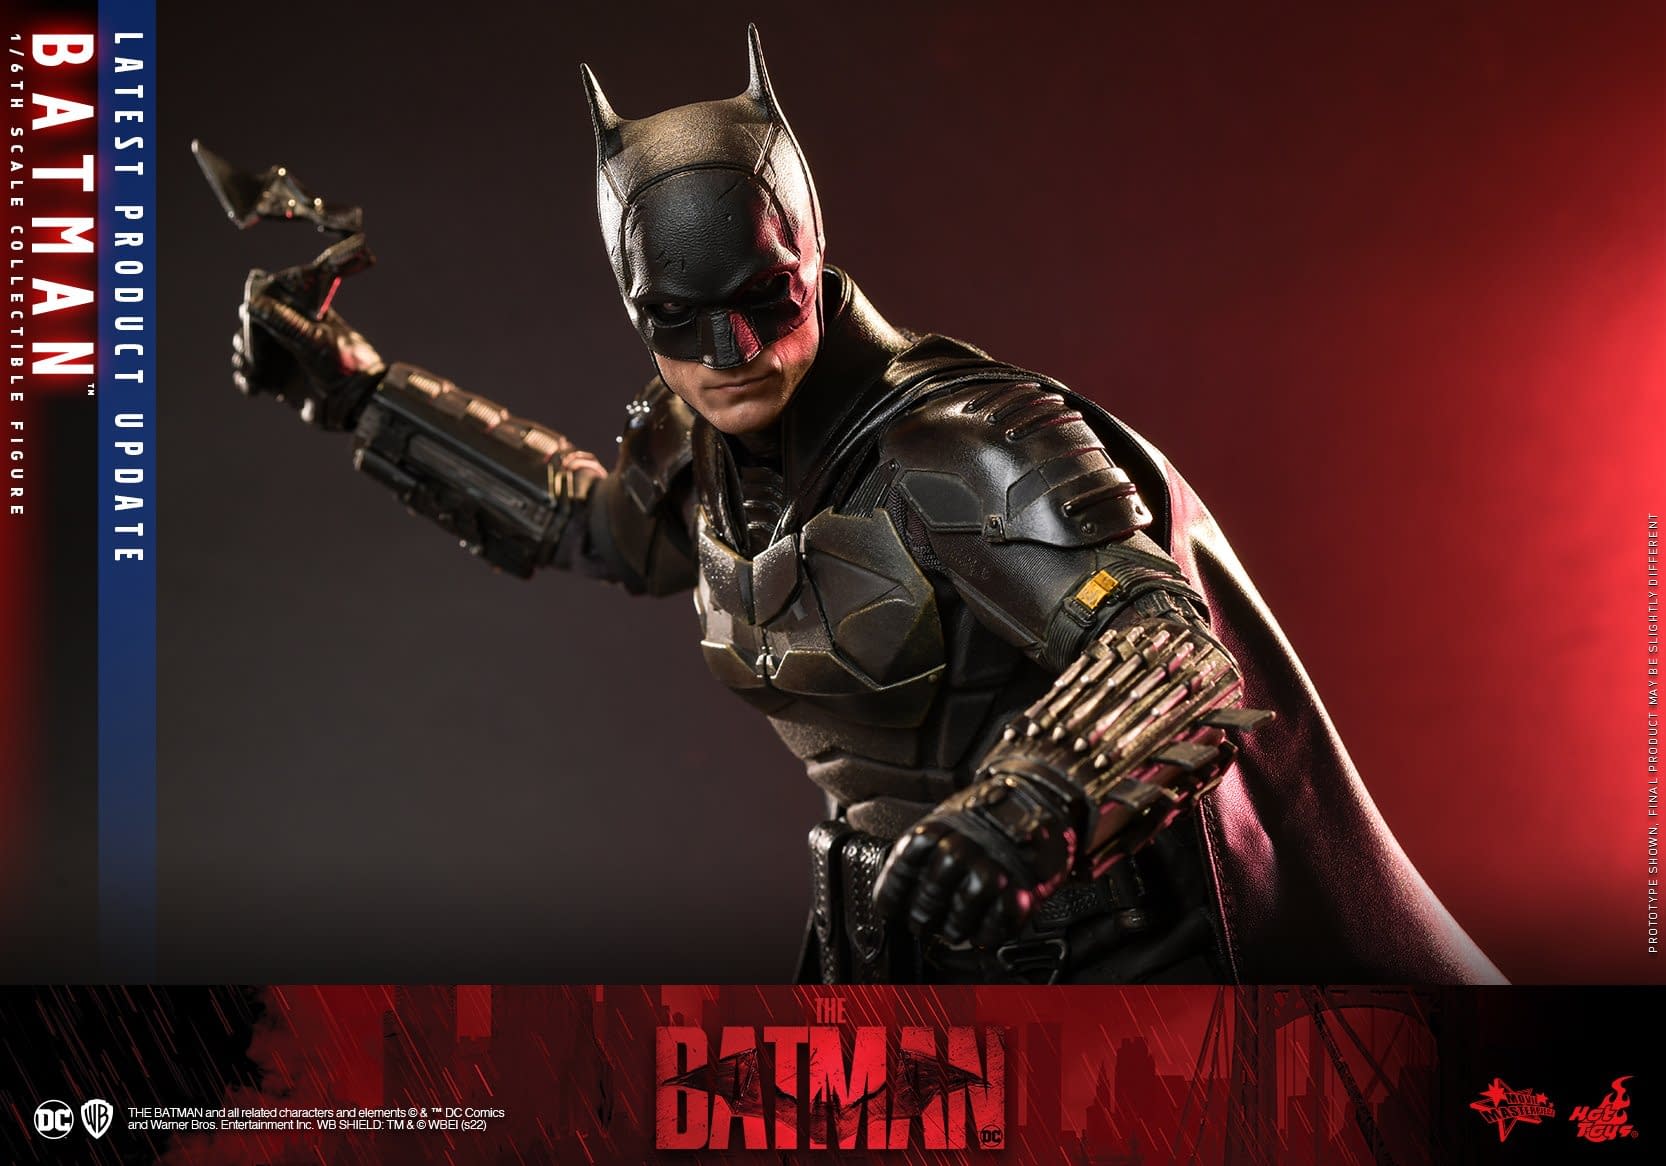 Hot Toys Announces Updates for 1/6 Scale The Batman Figure 